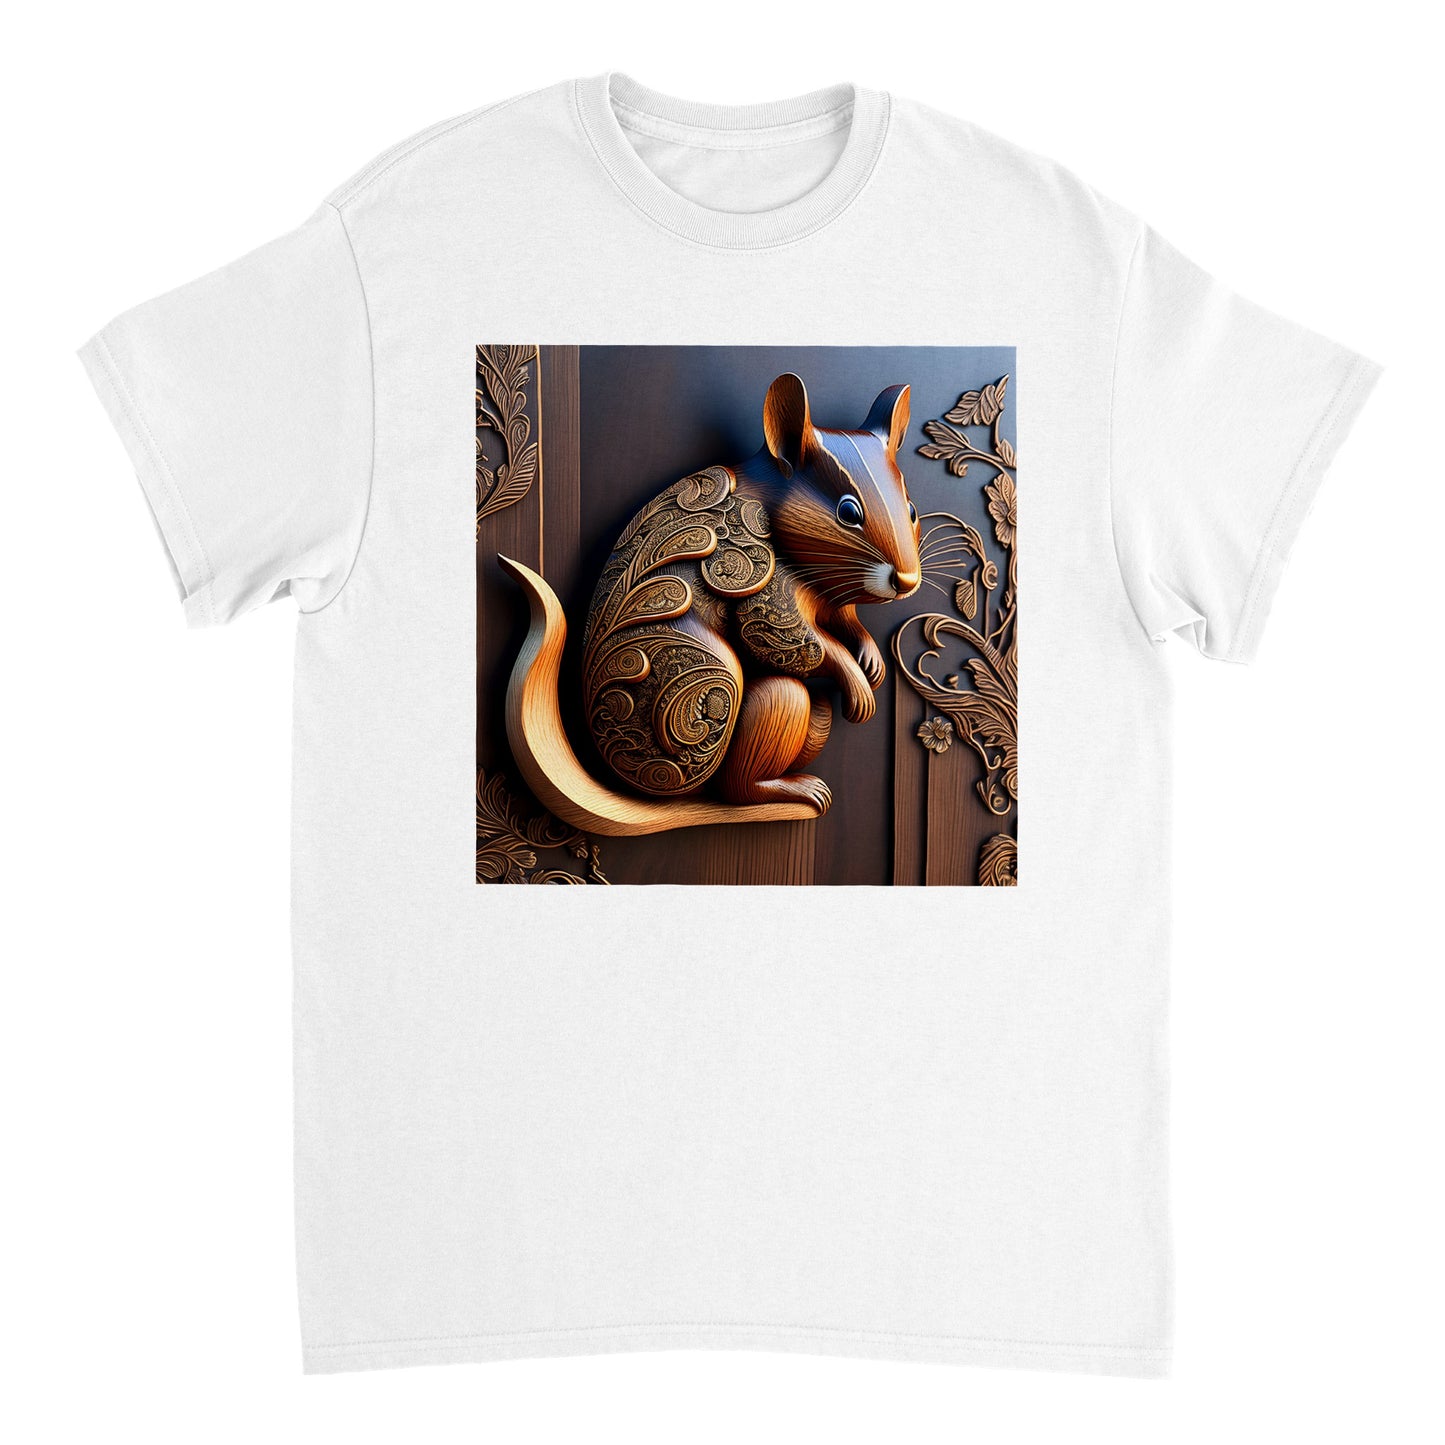 3D Wooden Animal Art - Heavyweight Unisex Crewneck T-shirt 77